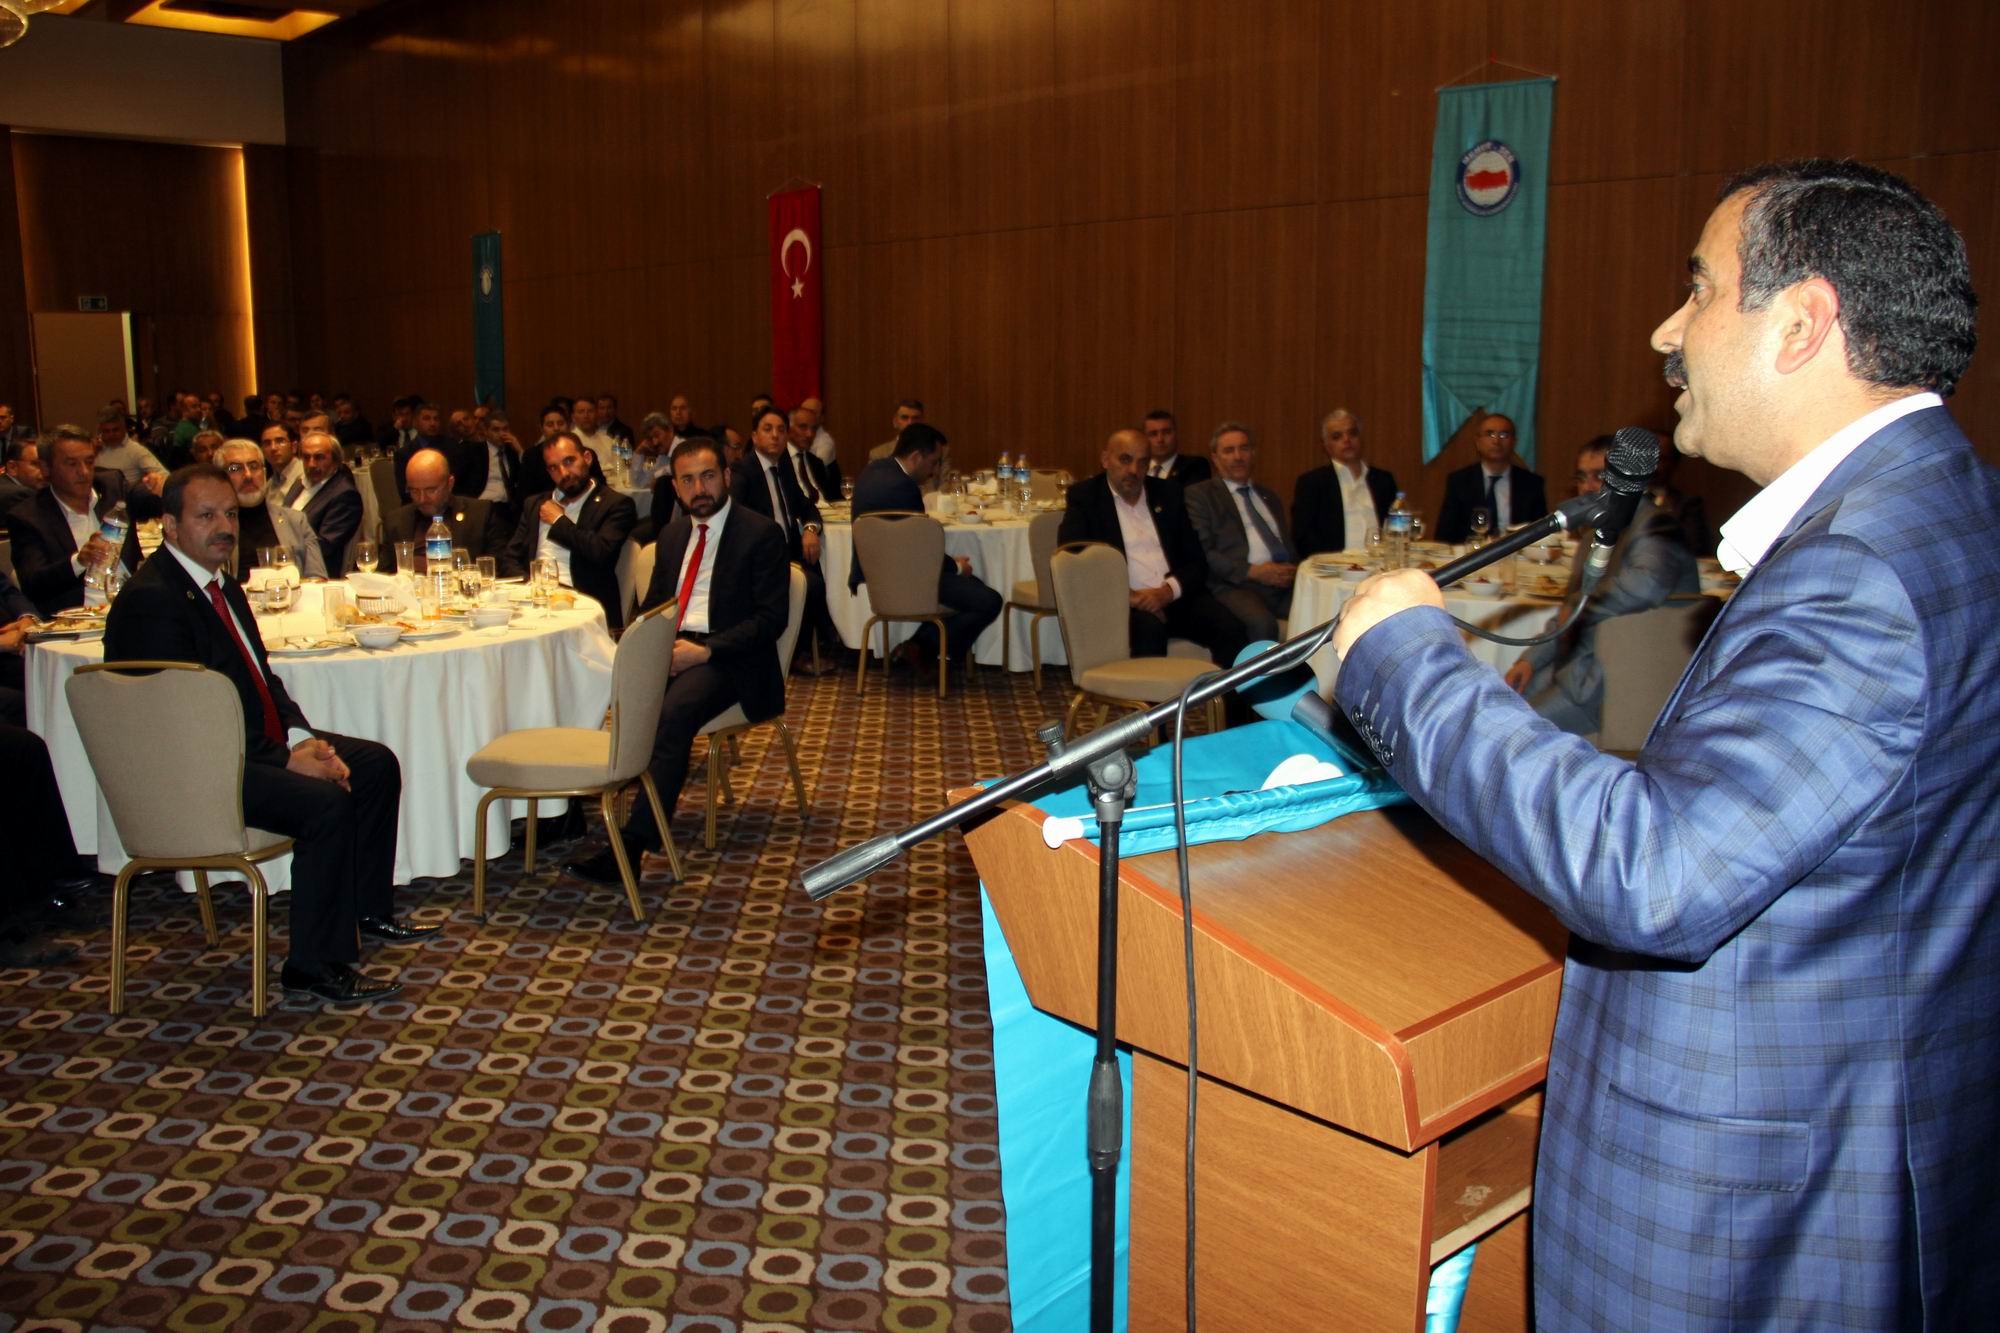 Sağlık-Sen Genel Başkanı Memiş: “Türkiye’de memur sendikacılığına örnek teşkil ediyoruz”